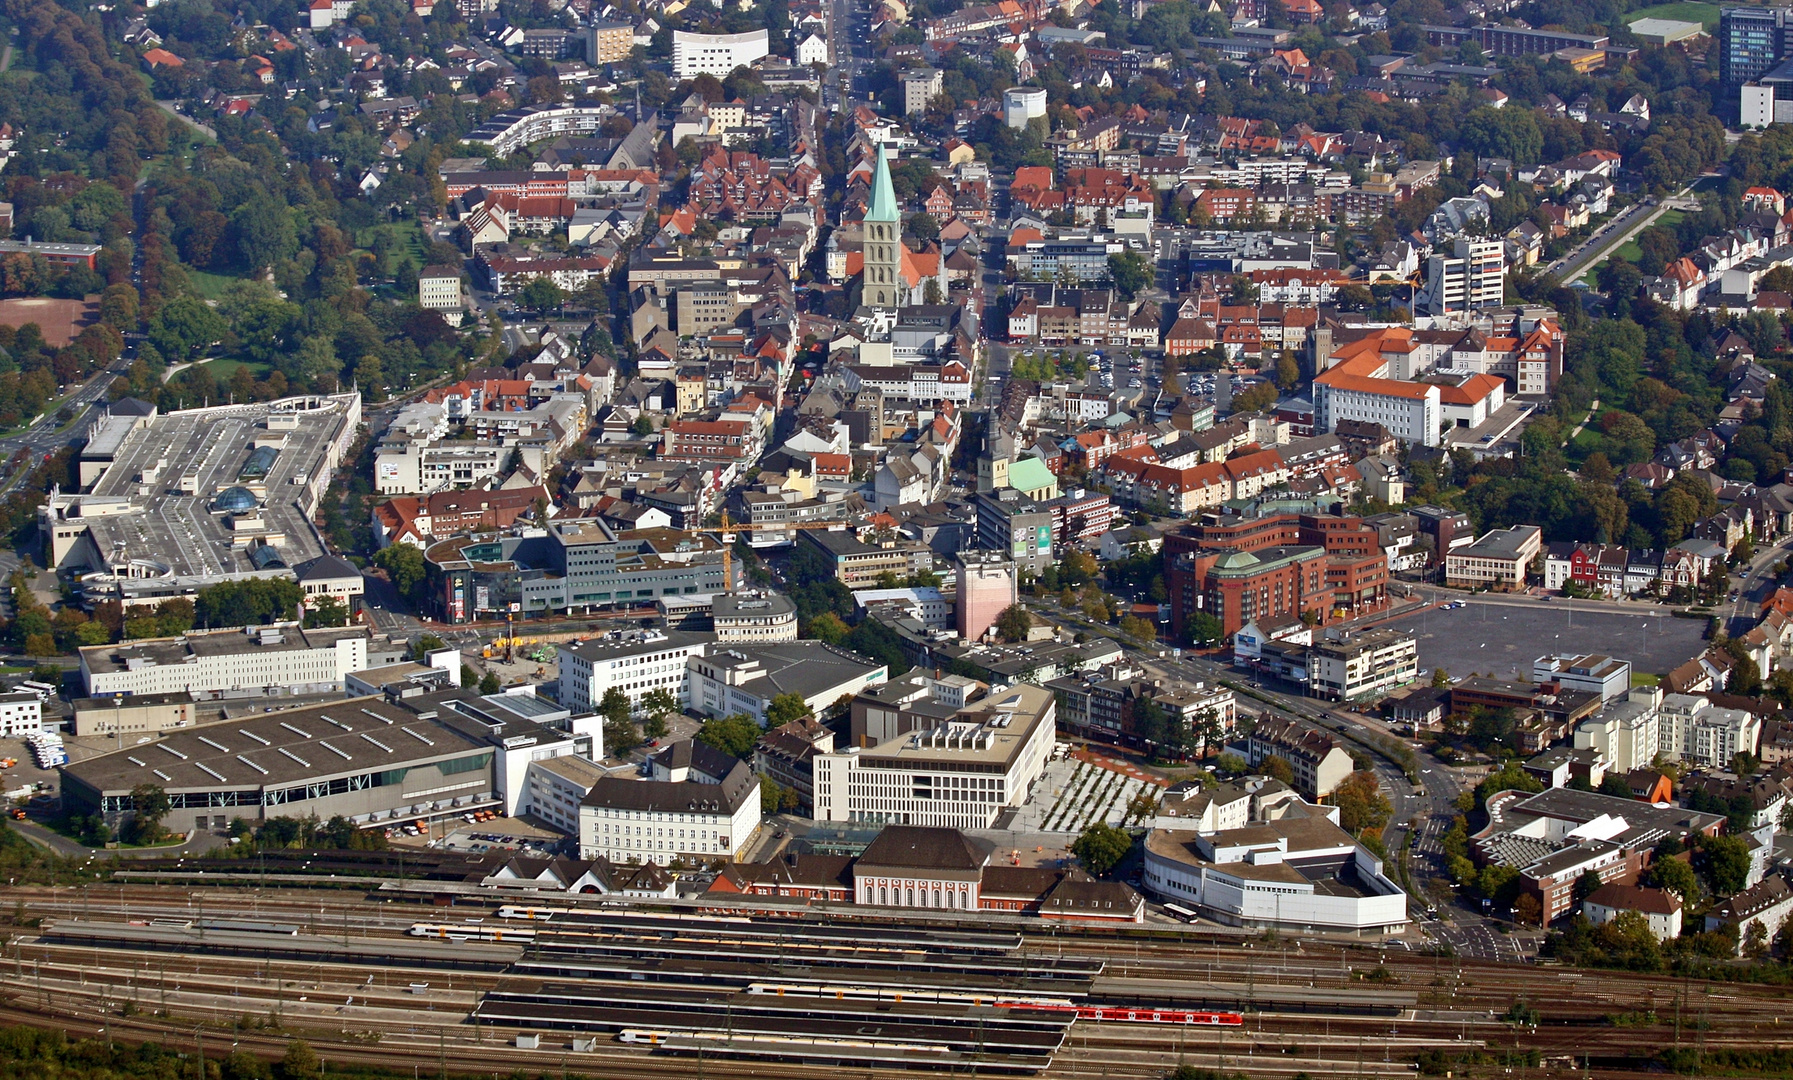 Bahnhof Hamm